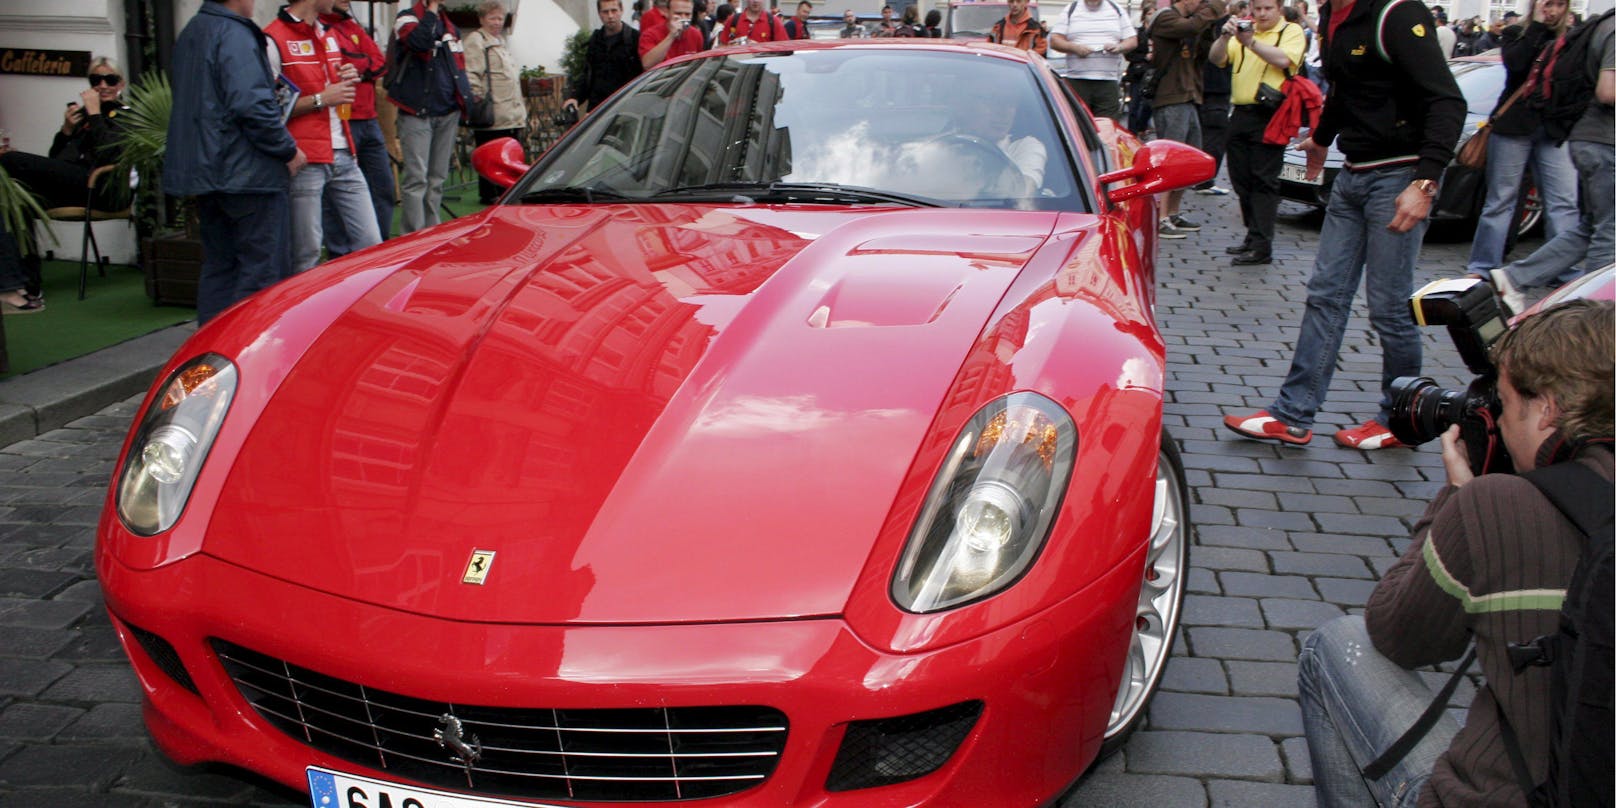 Der Ferrari wurde im Rahmen einer Routinekontrolle sichergestellt. Symbolbild.